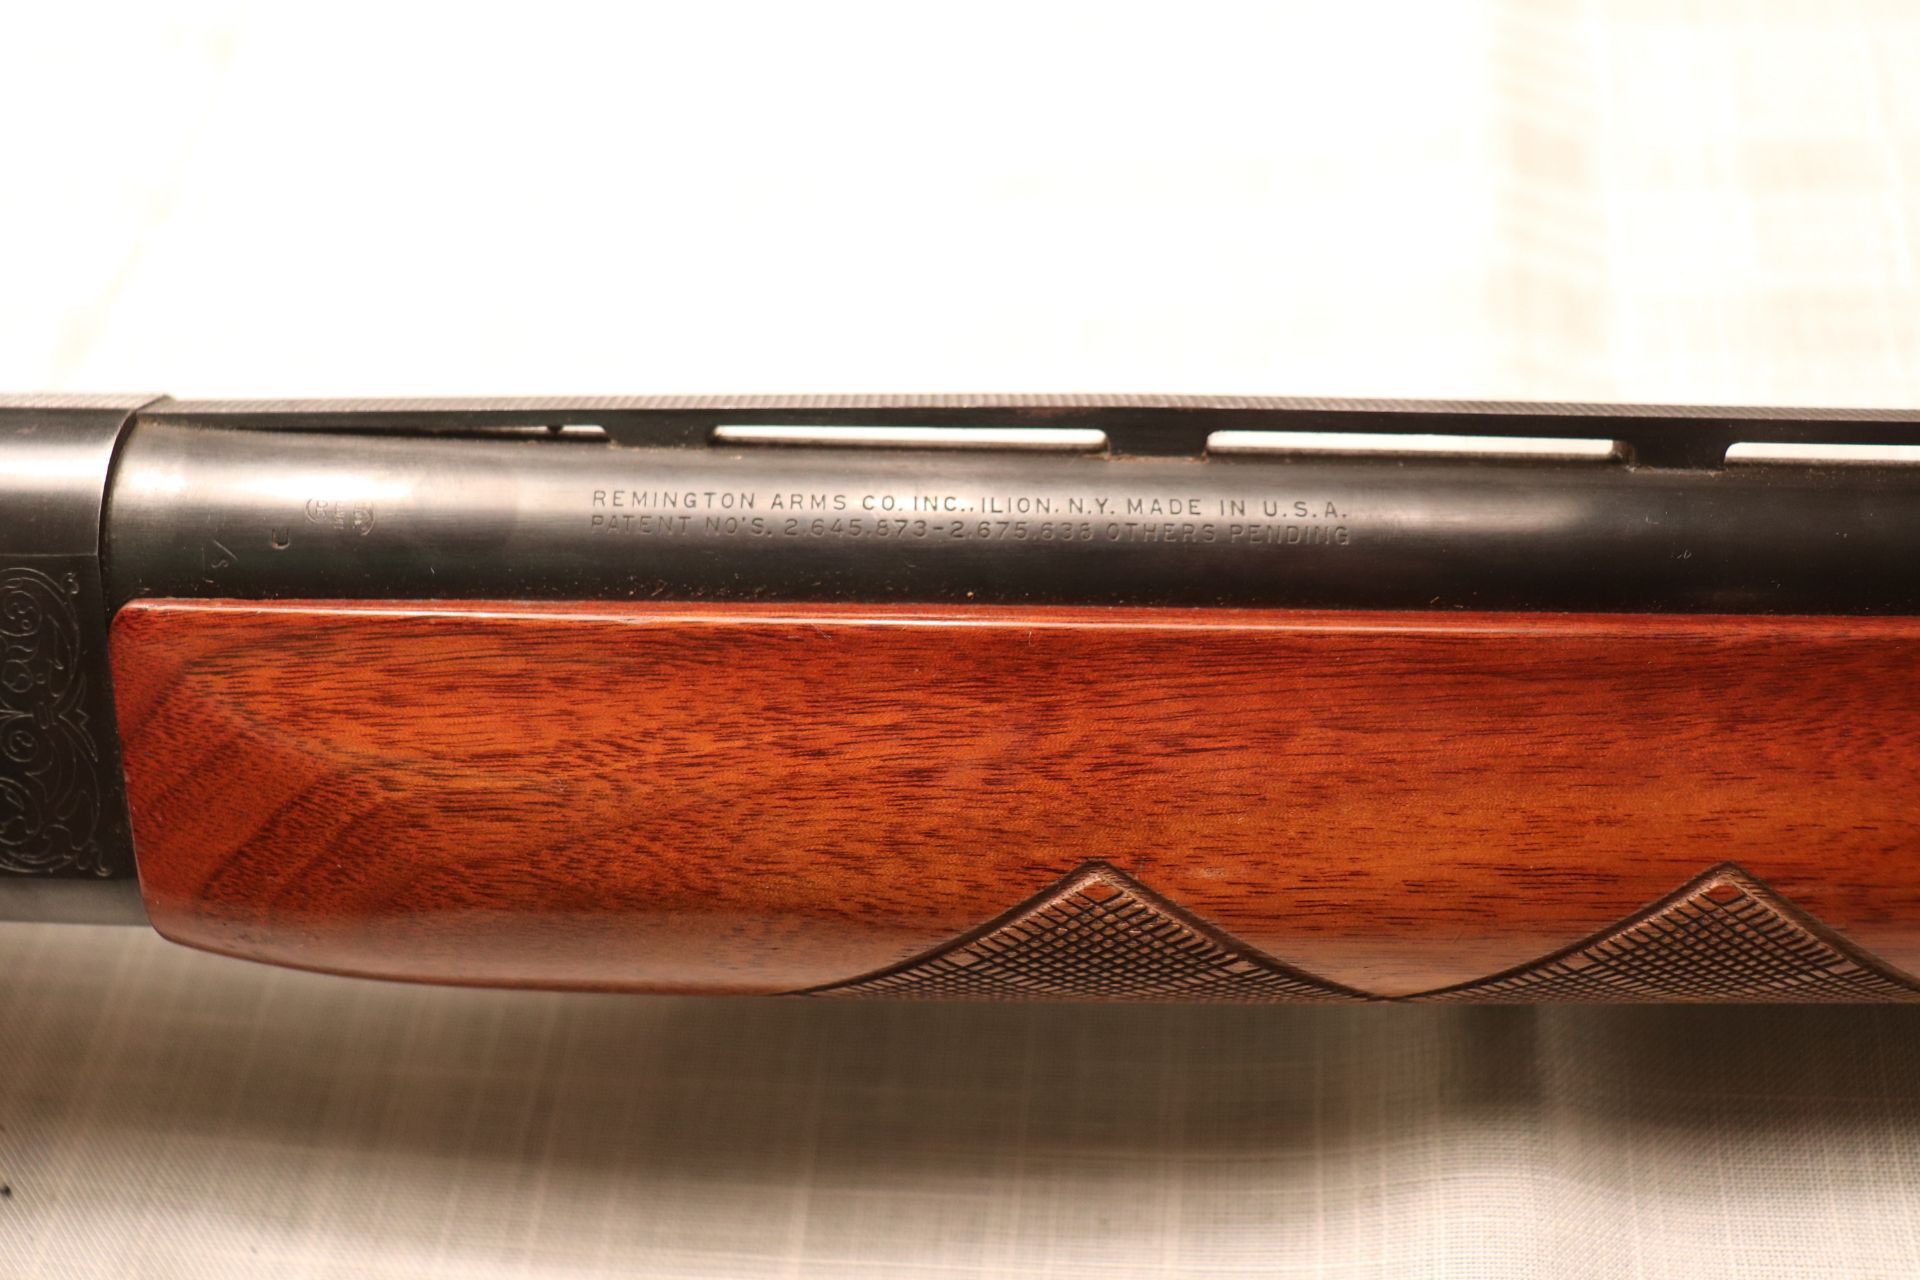 Remmington Sportsman 58 12 gauge shotgun - Image 3 of 8